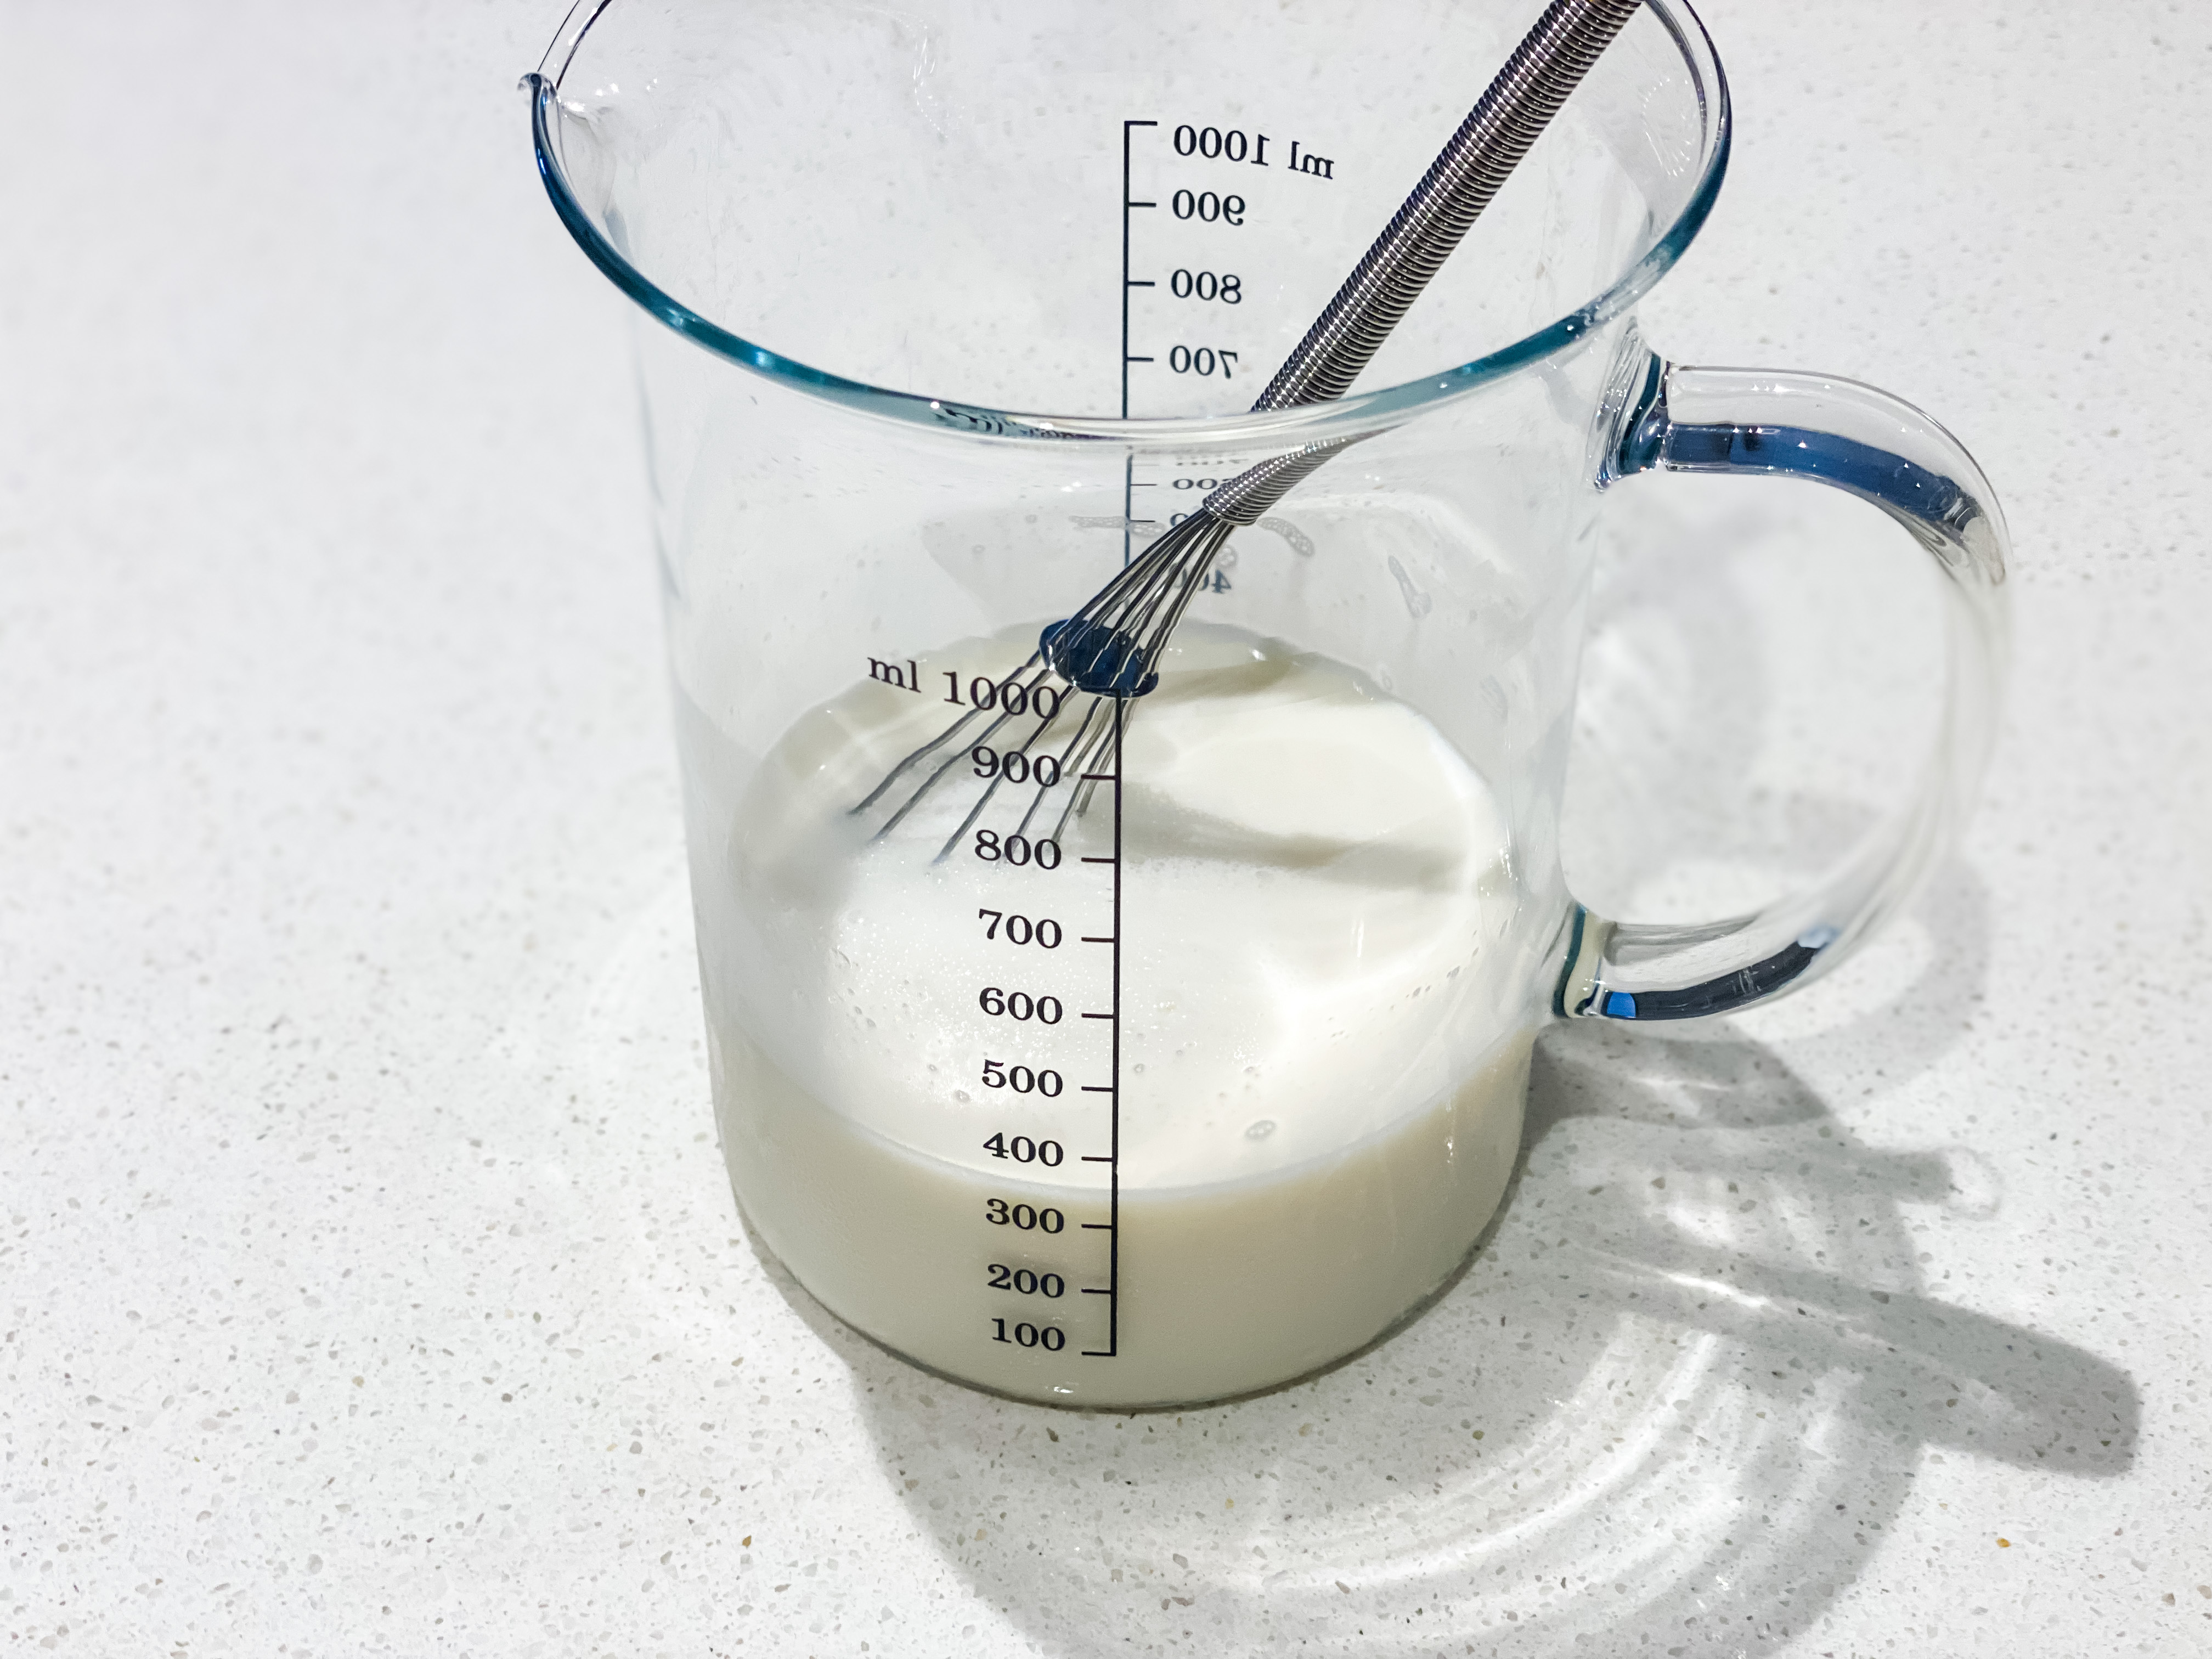 鮮奶和糖攪拌至糖溶化後，倒入蛋白拌勻